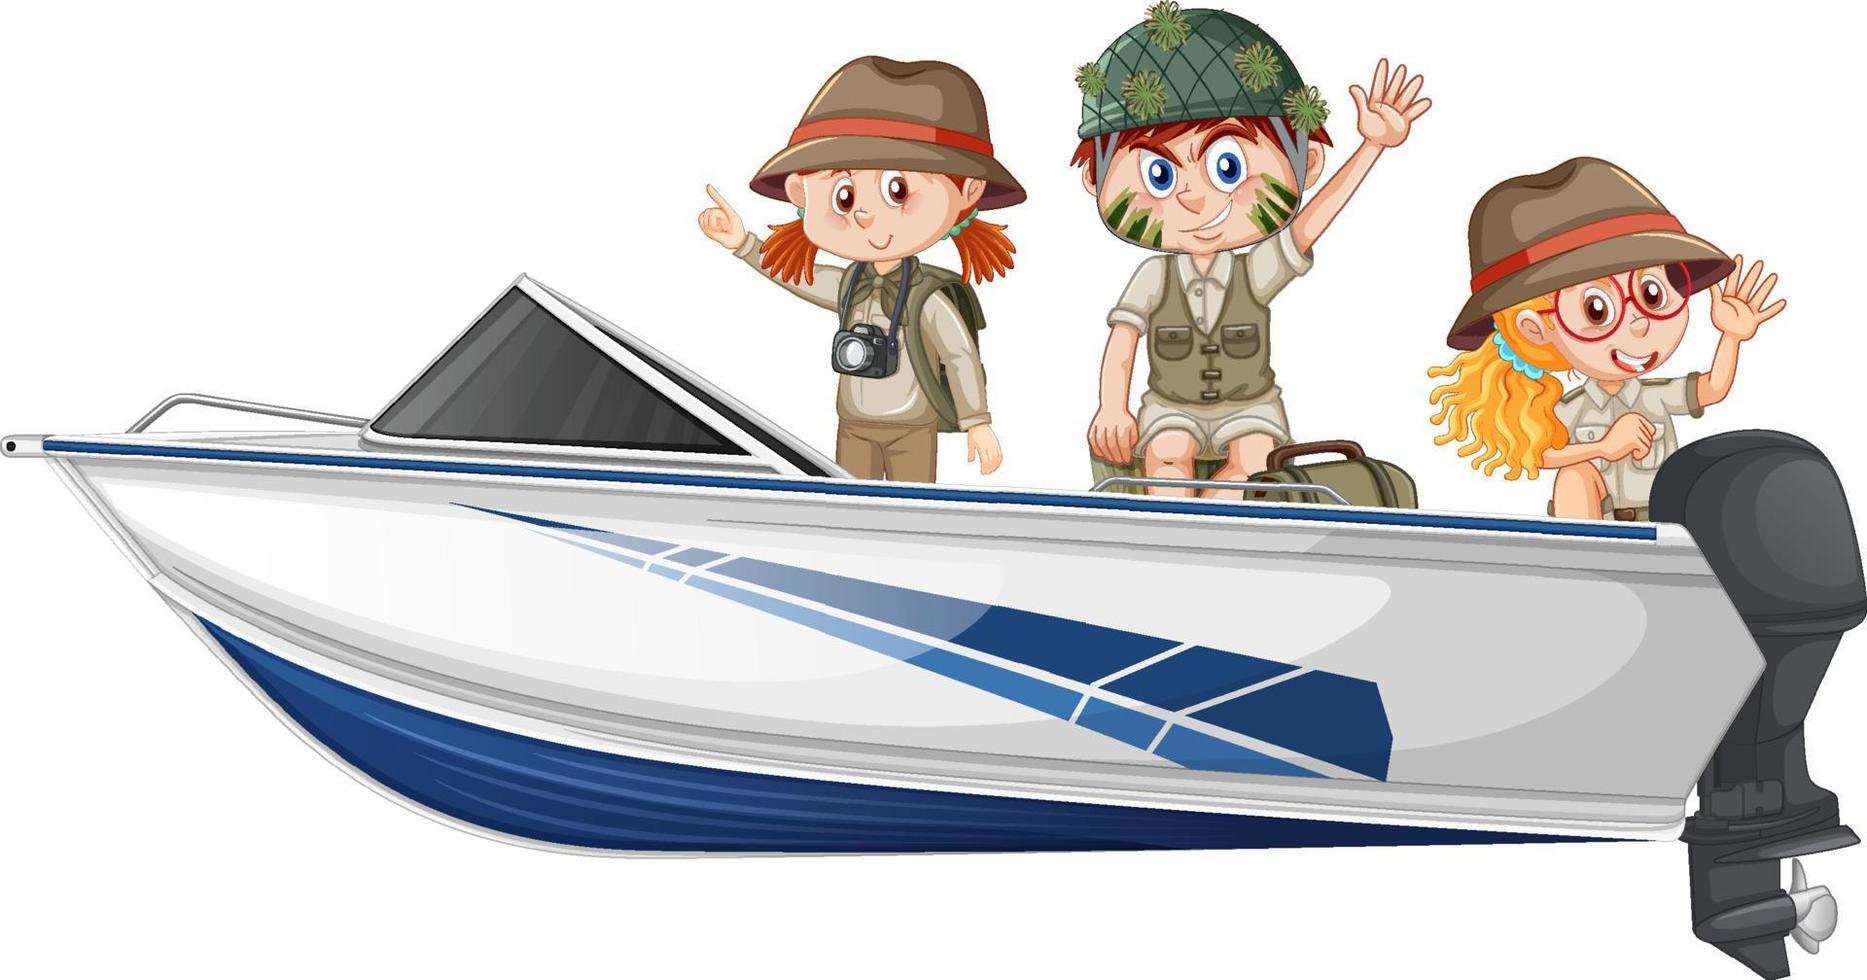 jongen en meisje in safari-outfit zittend op een boot op een witte achtergrond vector